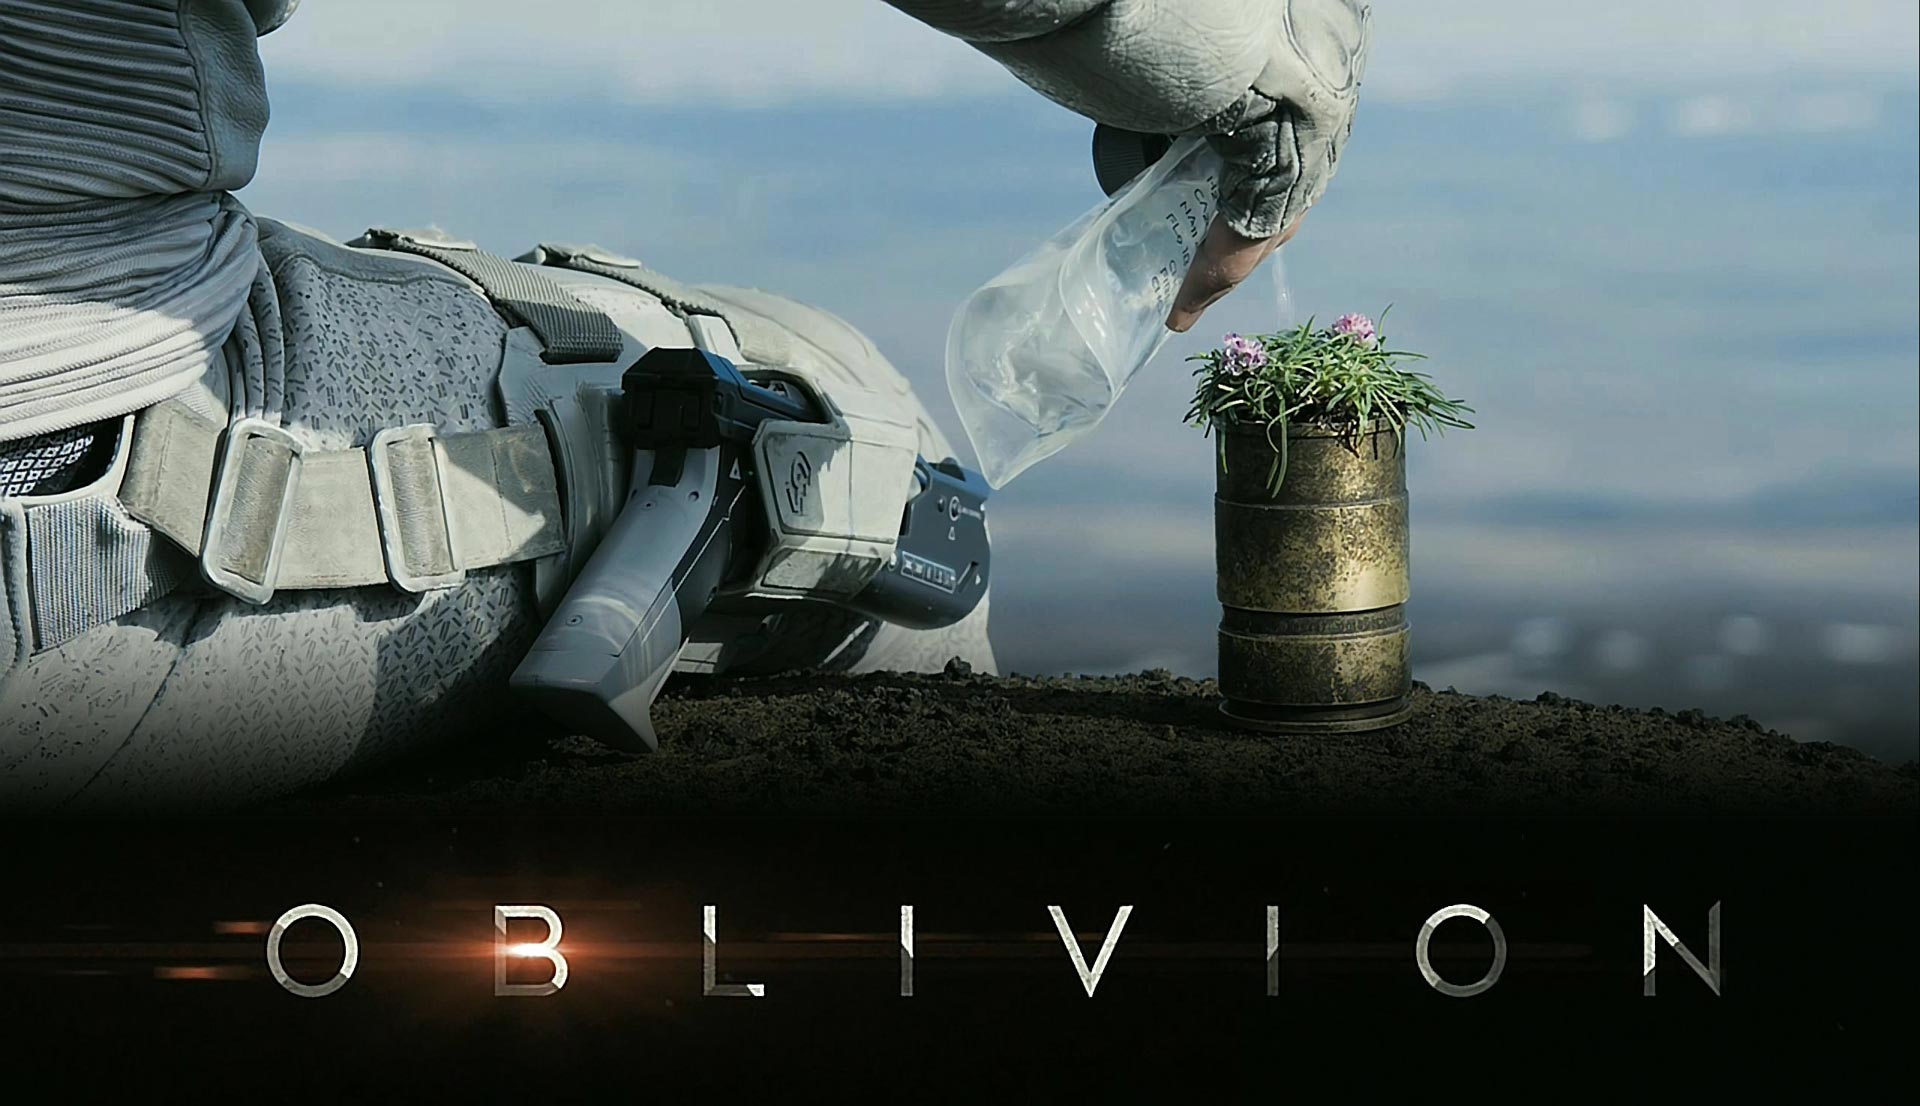 Movie Trailer: New Oblivion Trailer